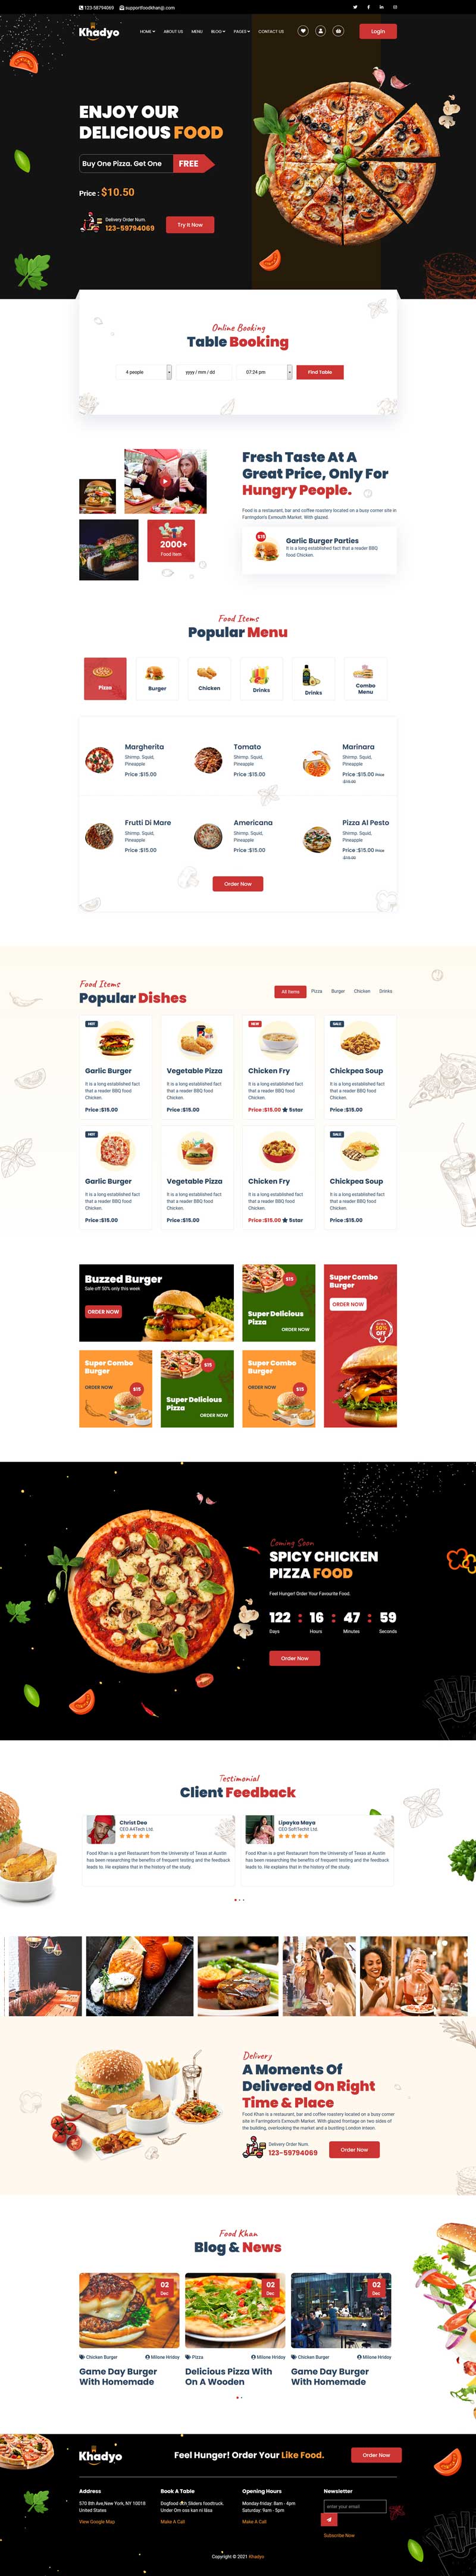 披萨快餐厅外卖网站HTML5模板